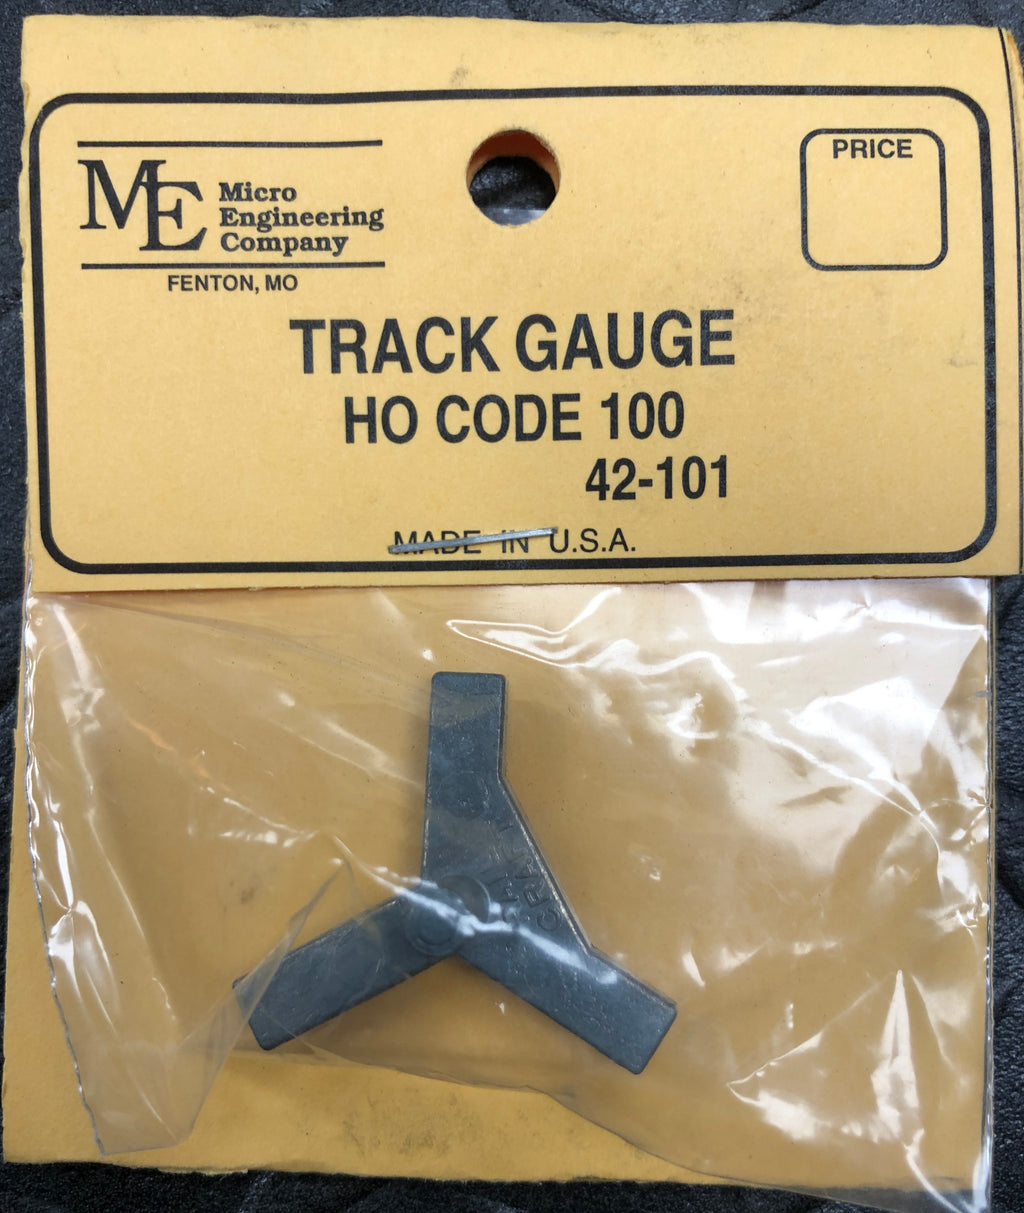 HO Code 100 Track Gauge